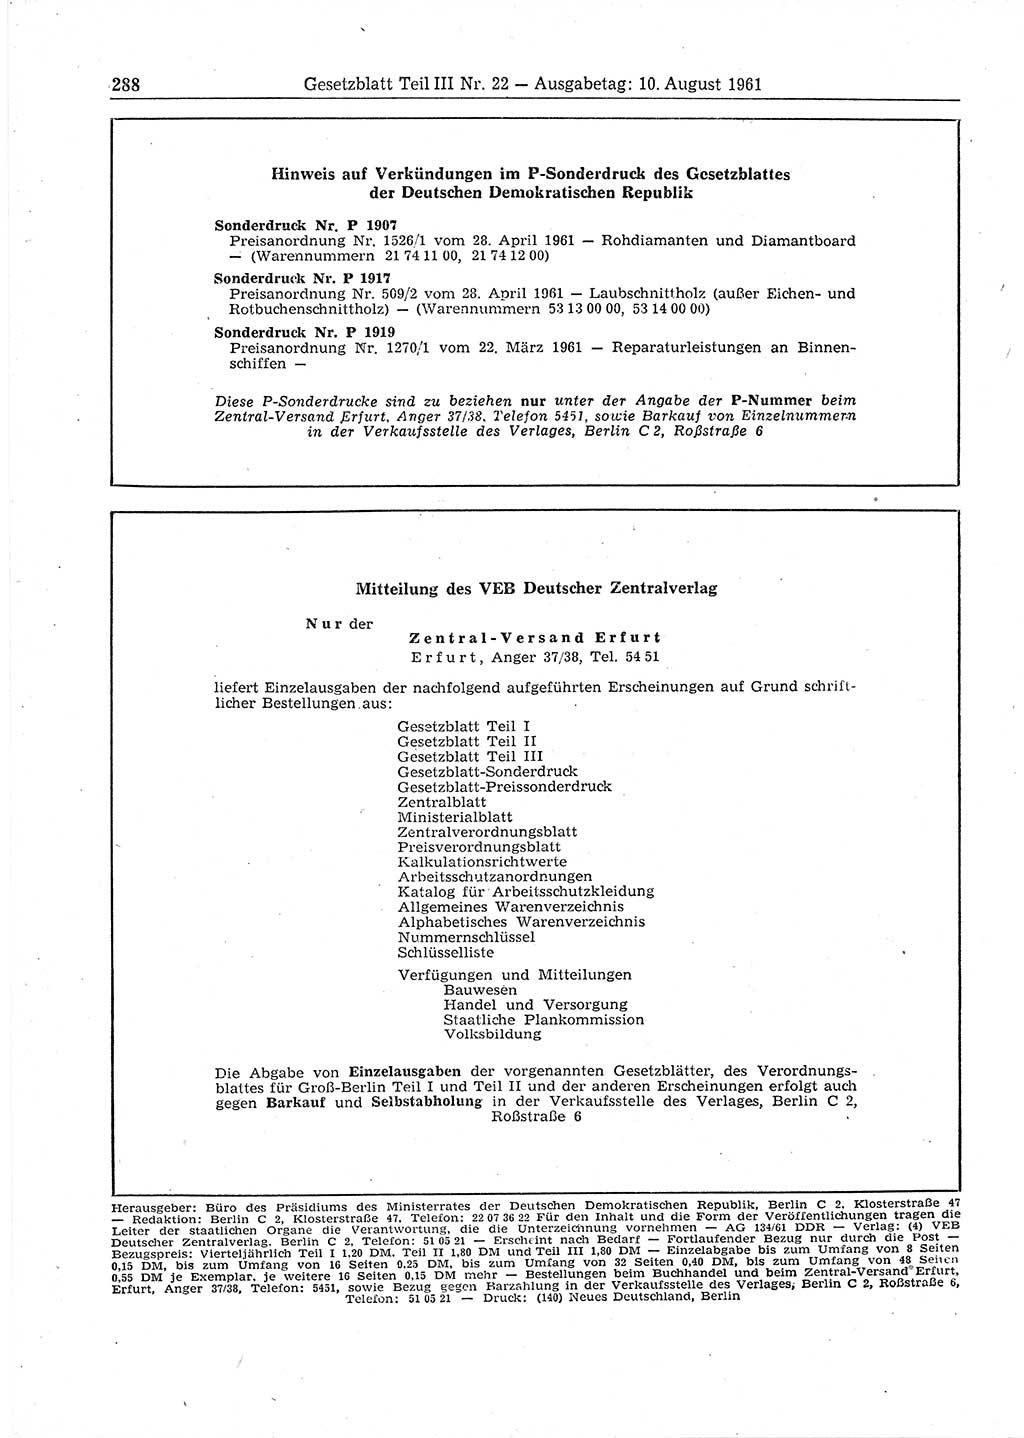 Gesetzblatt (GBl.) der Deutschen Demokratischen Republik (DDR) Teil ⅠⅠⅠ 1961, Seite 288 (GBl. DDR ⅠⅠⅠ 1961, S. 288)